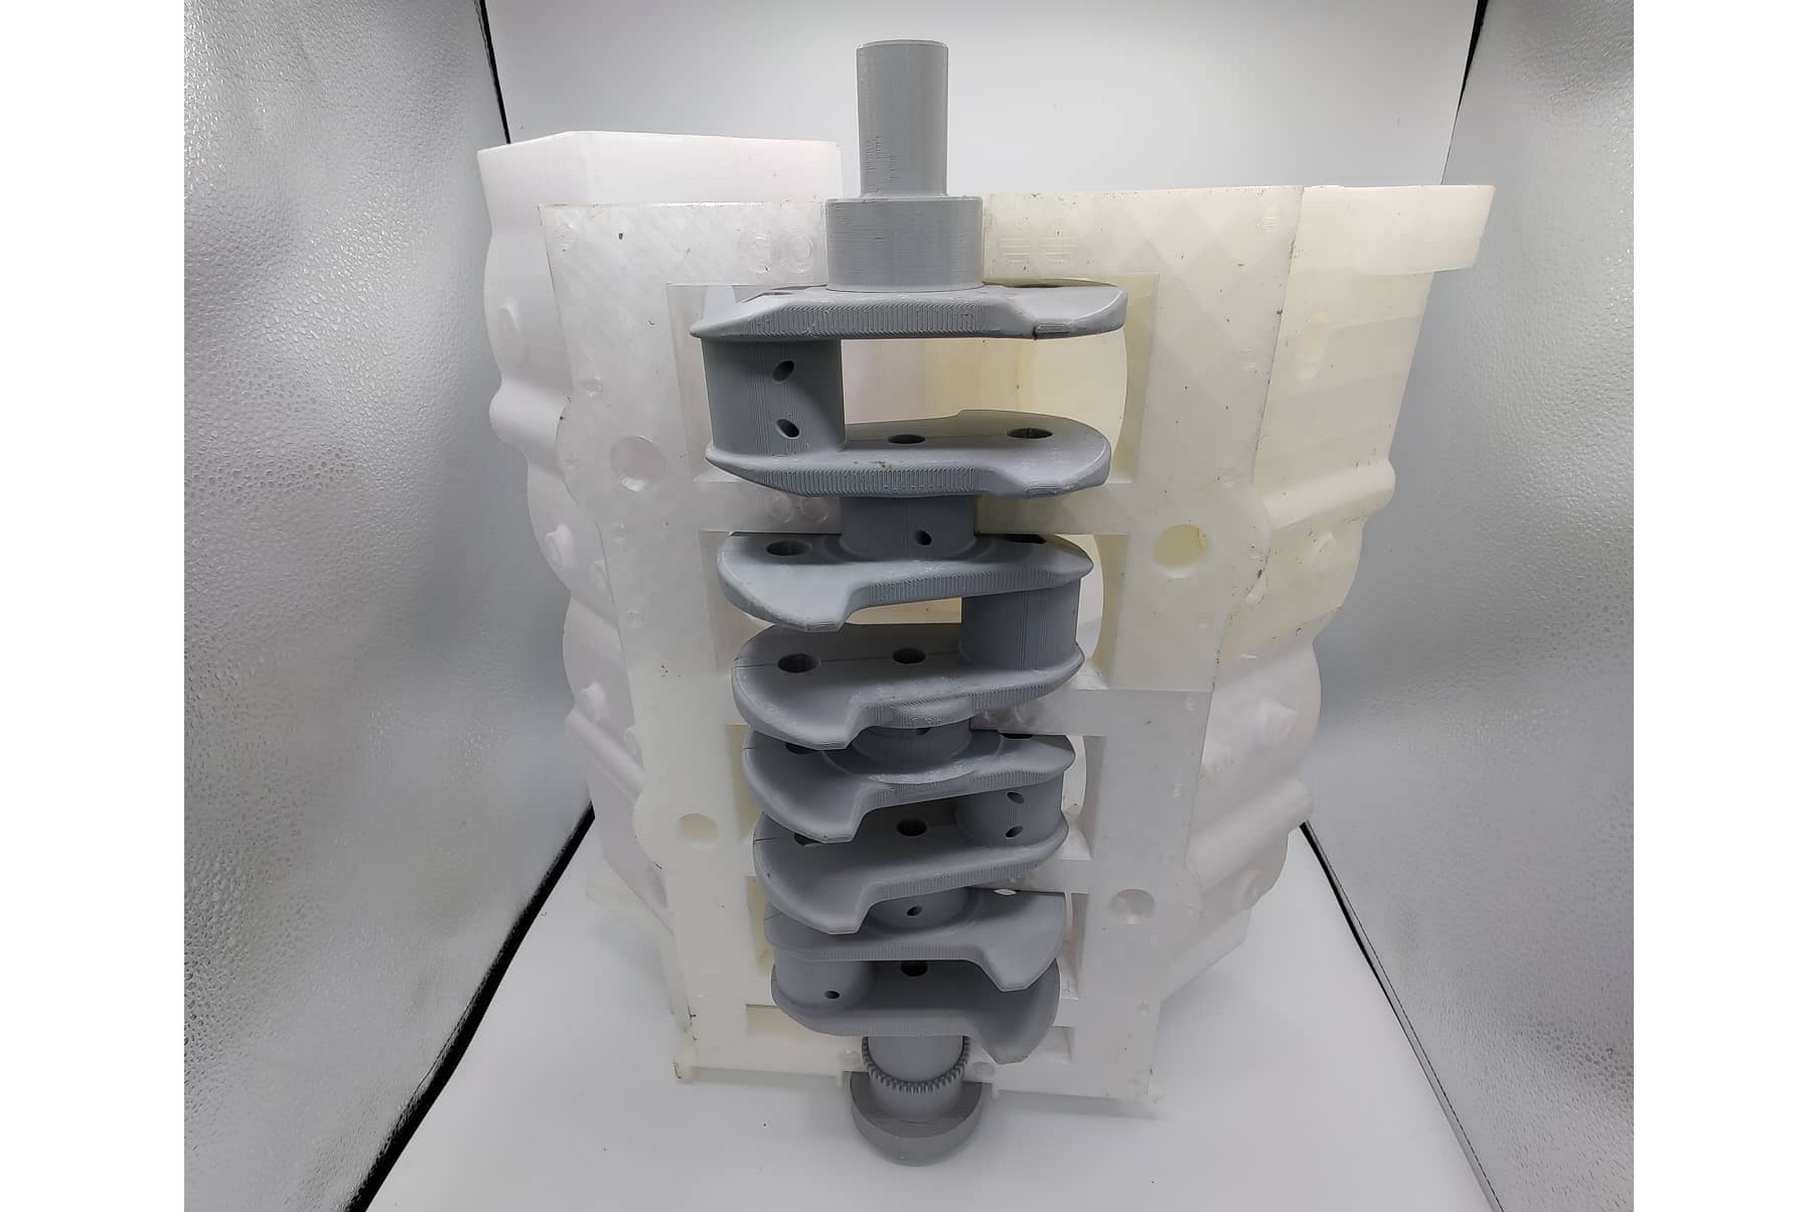 Макетная сборка: пластиковый коленвал установлен в пластиковый блок цилиндров